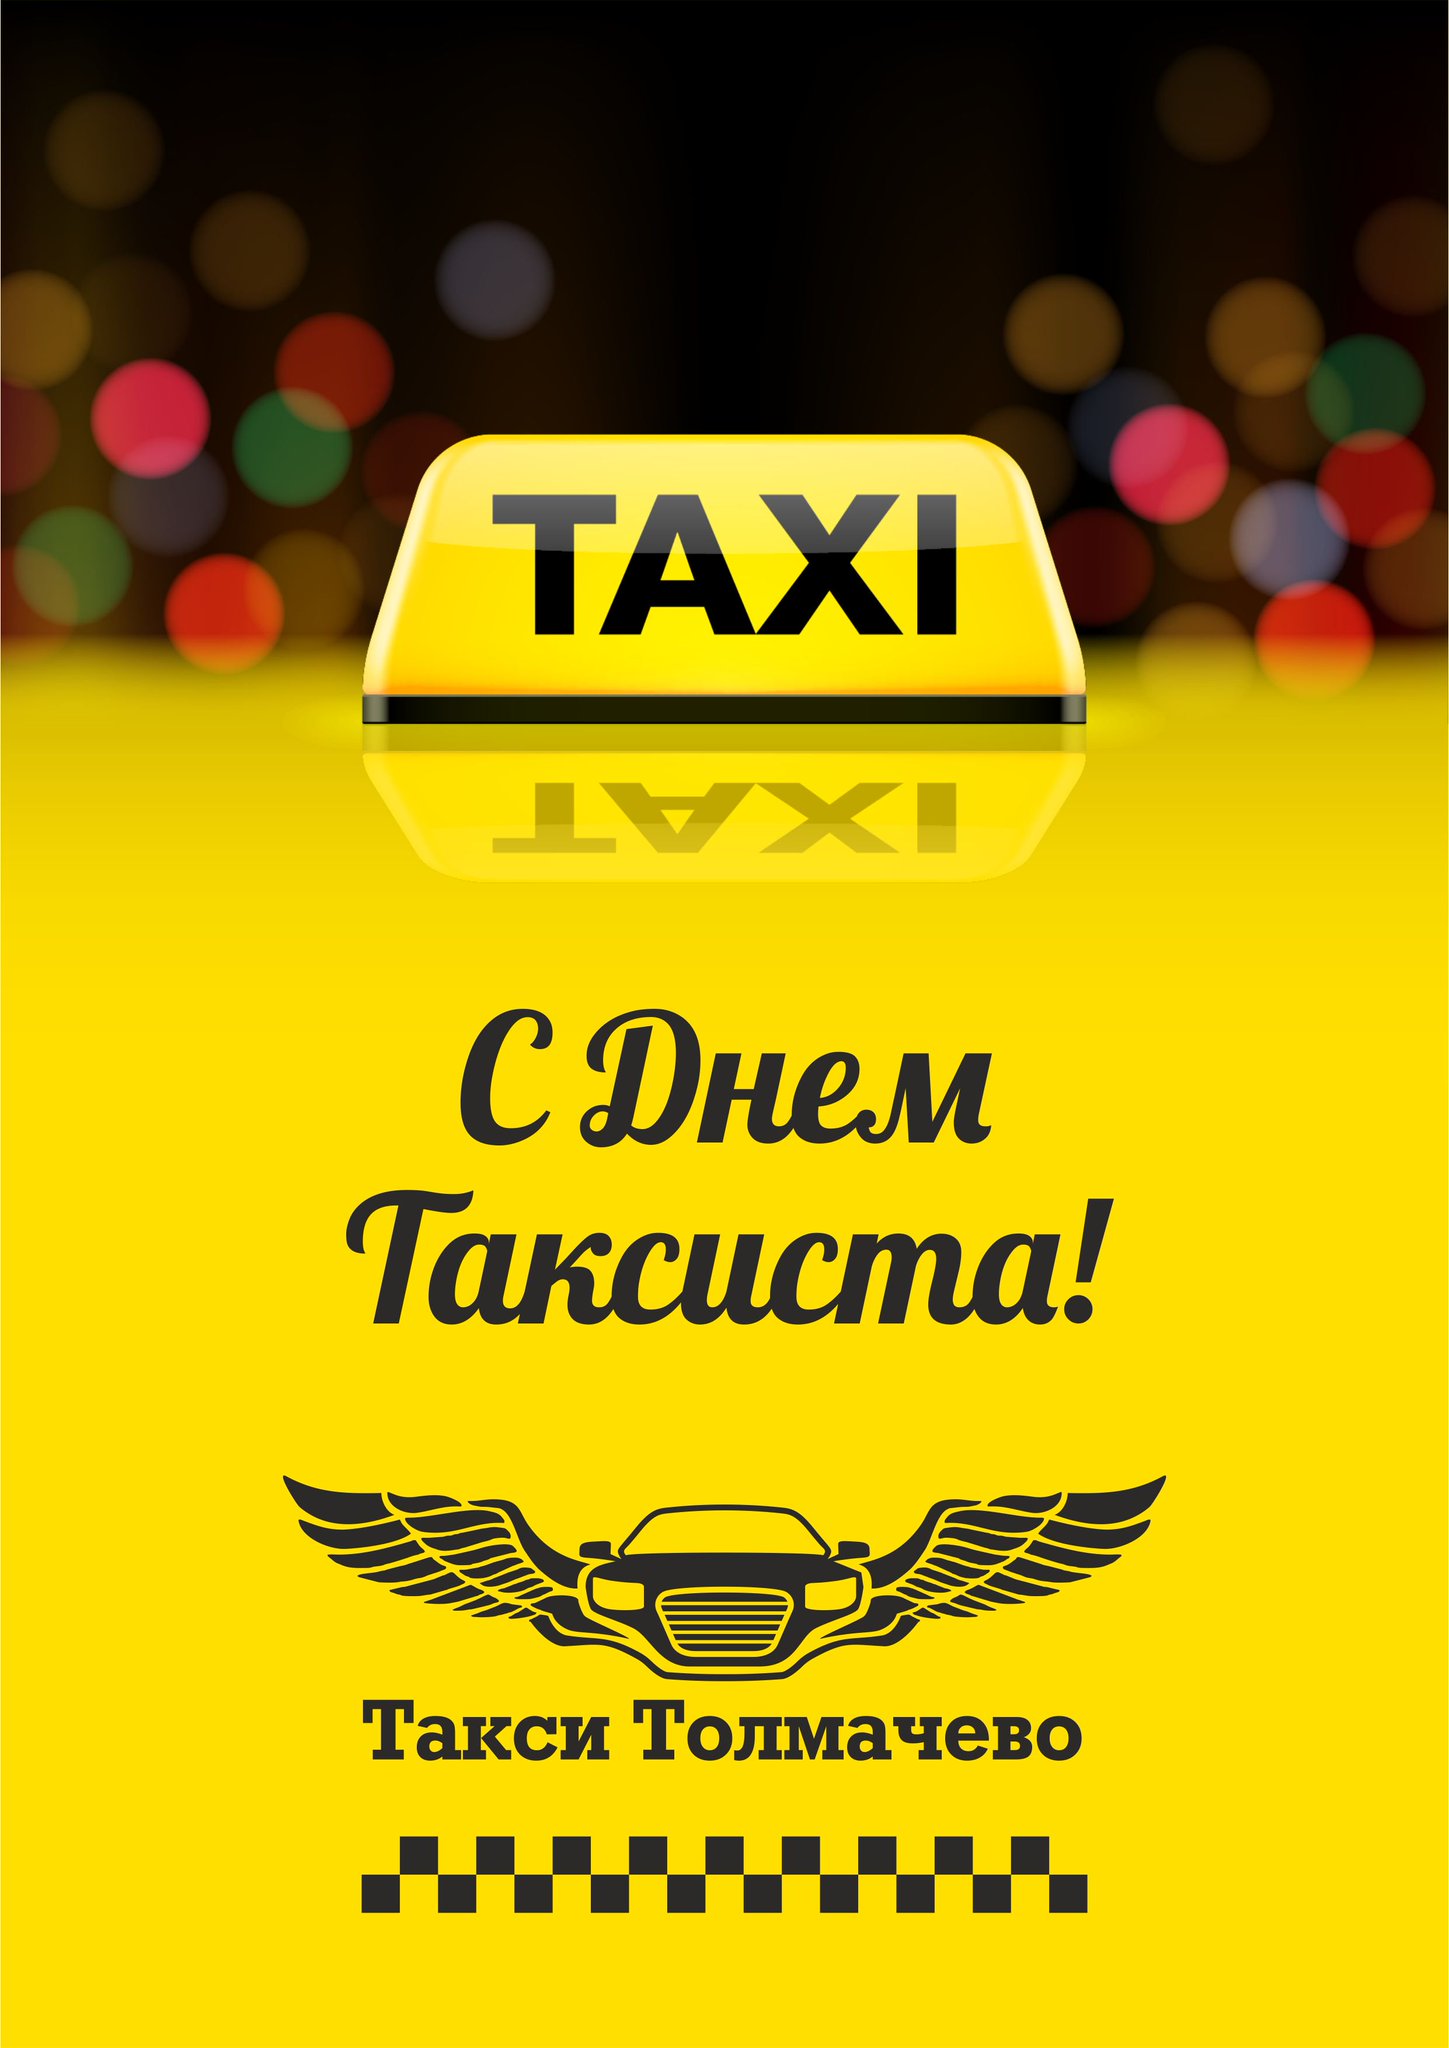 Такси клевое. Такси. День таксиста. Водитель такси. Международный день таксиста.